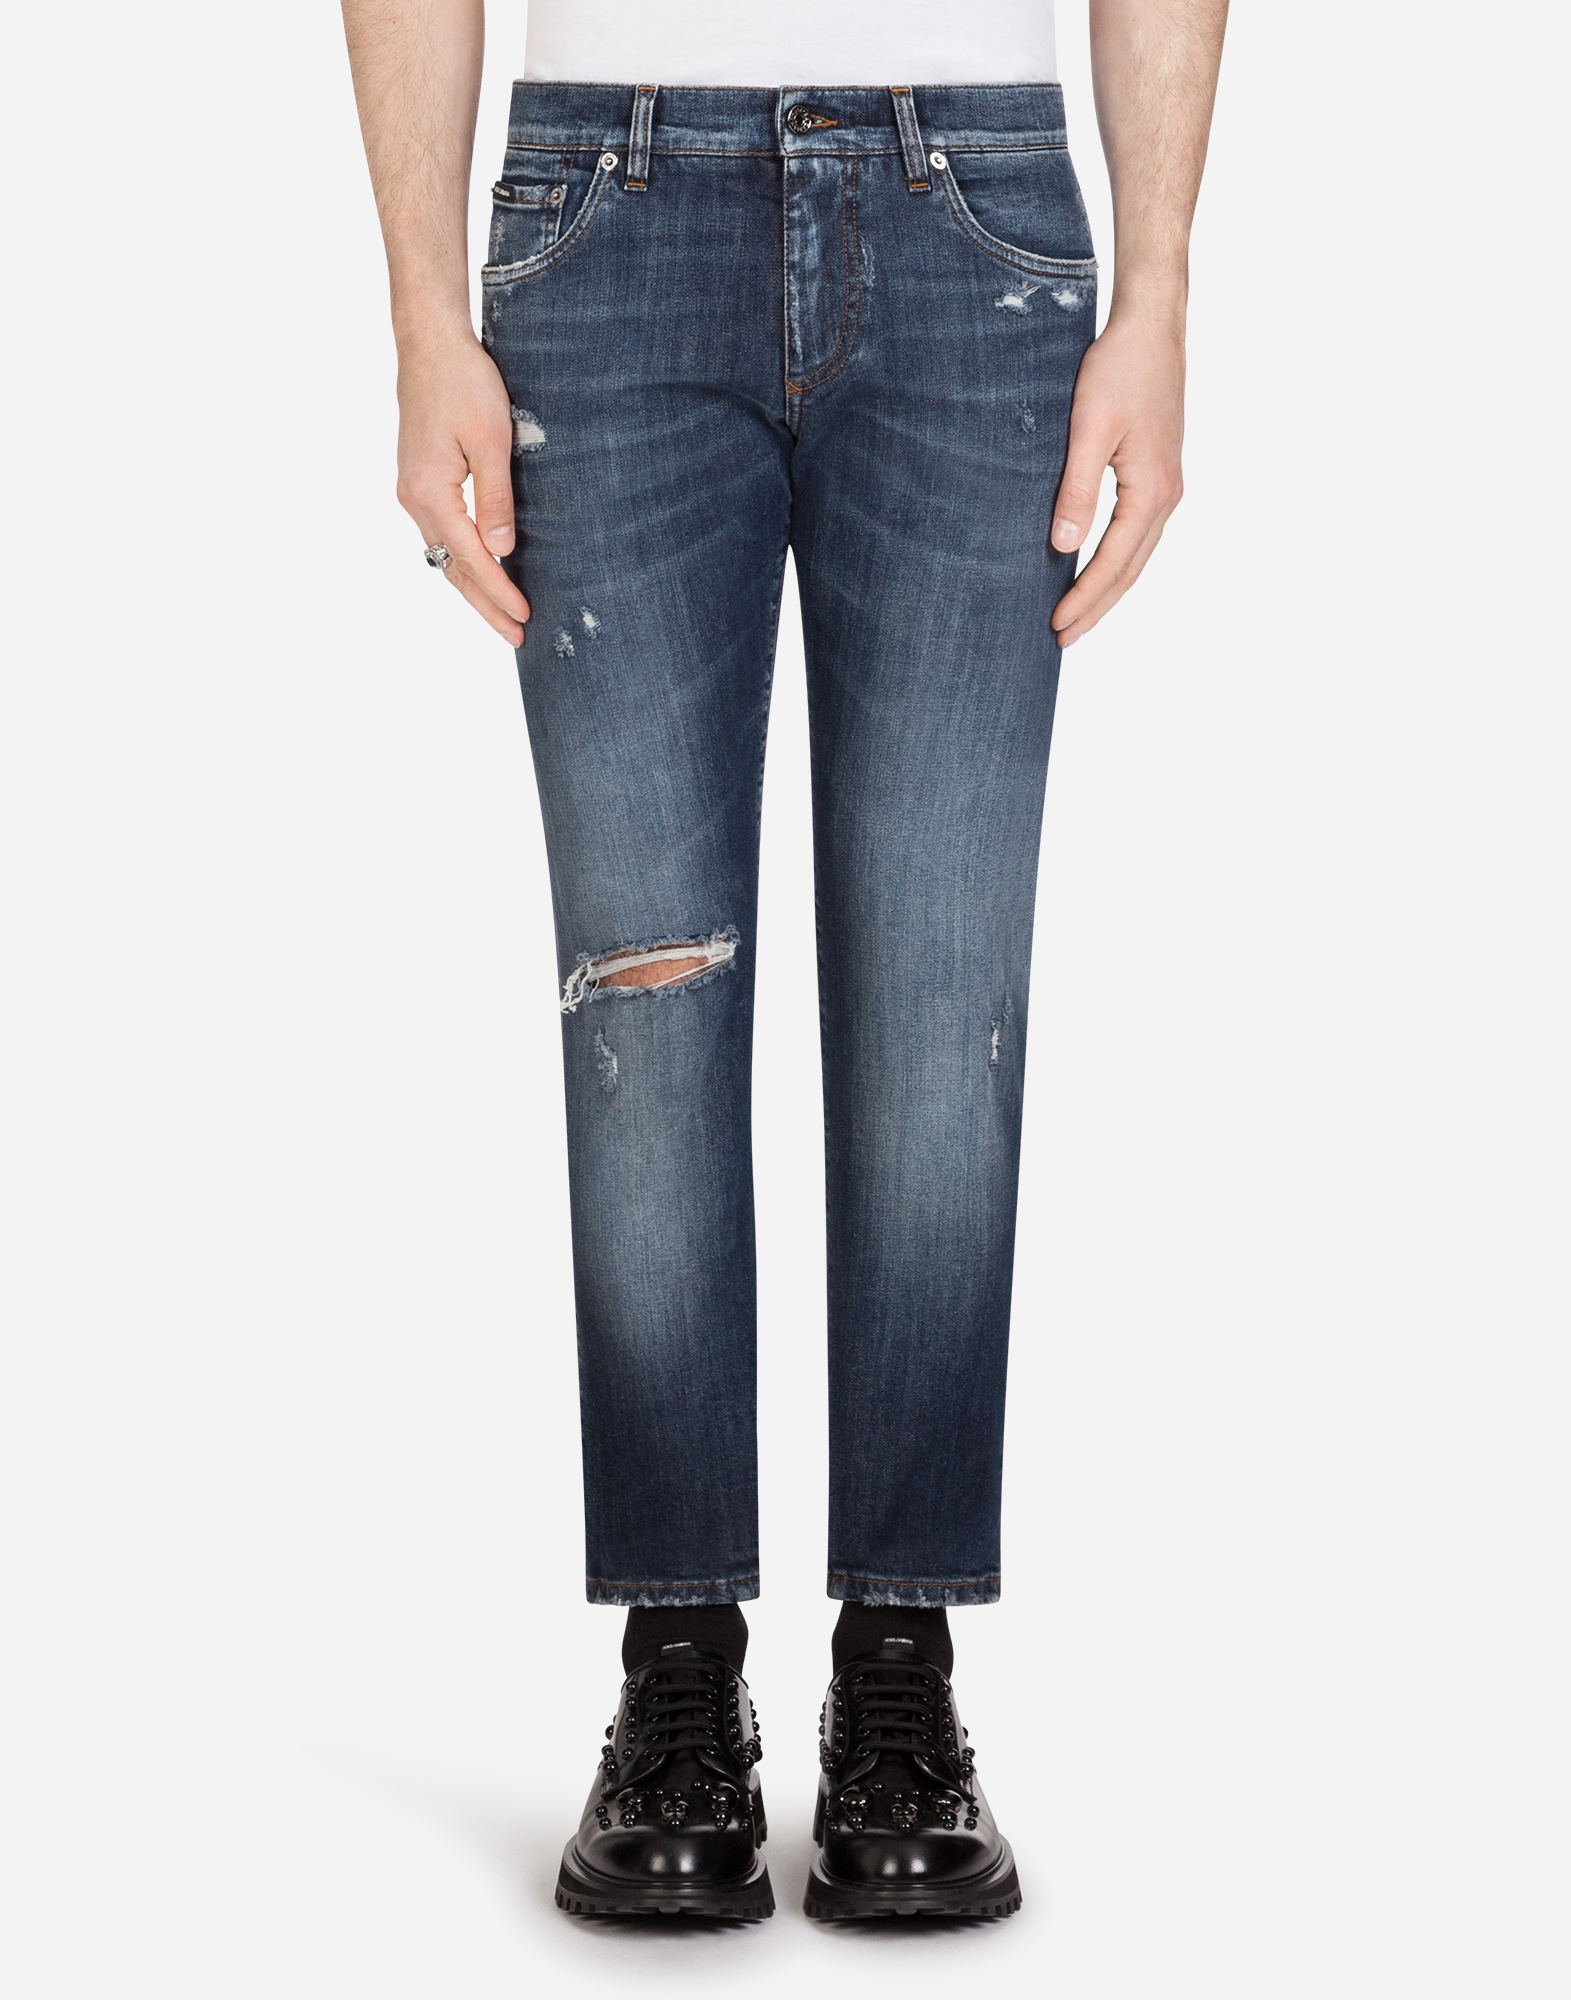 d&g jeans mens sale